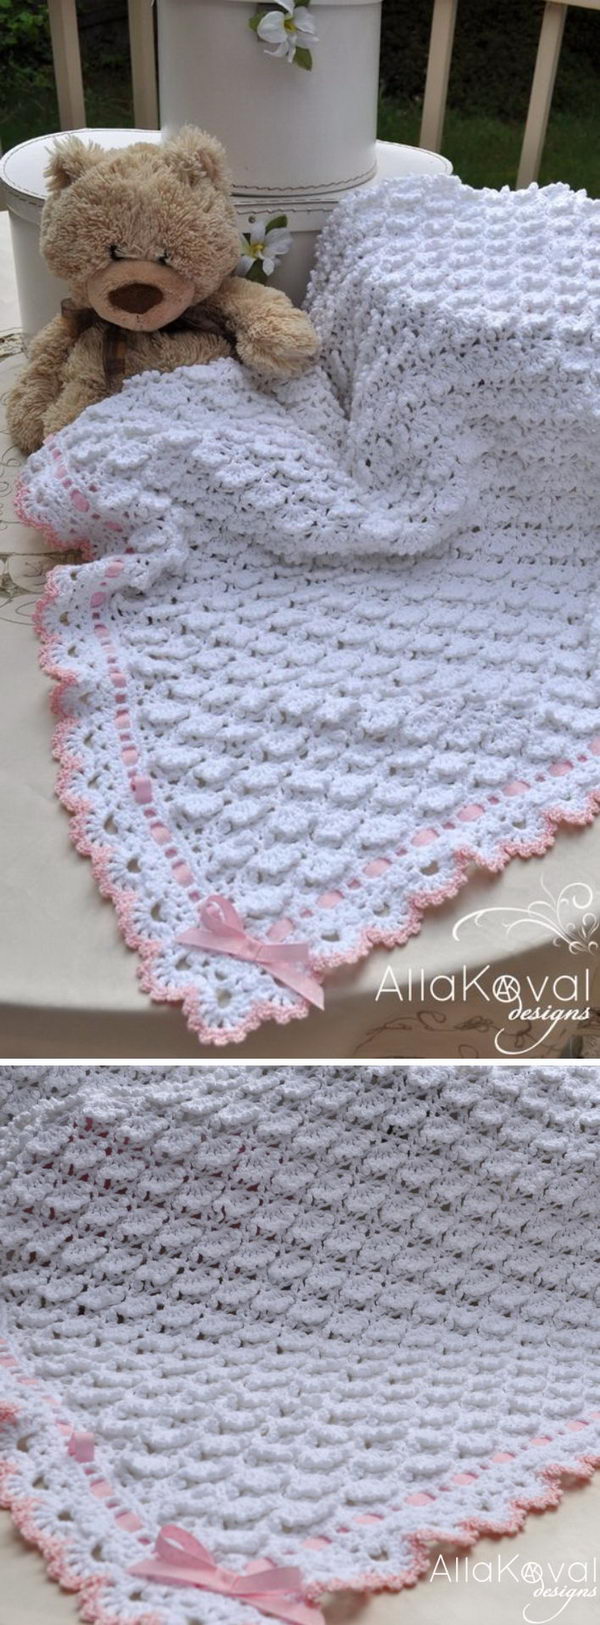 Free Baby Blanket Crochet Pattern. 